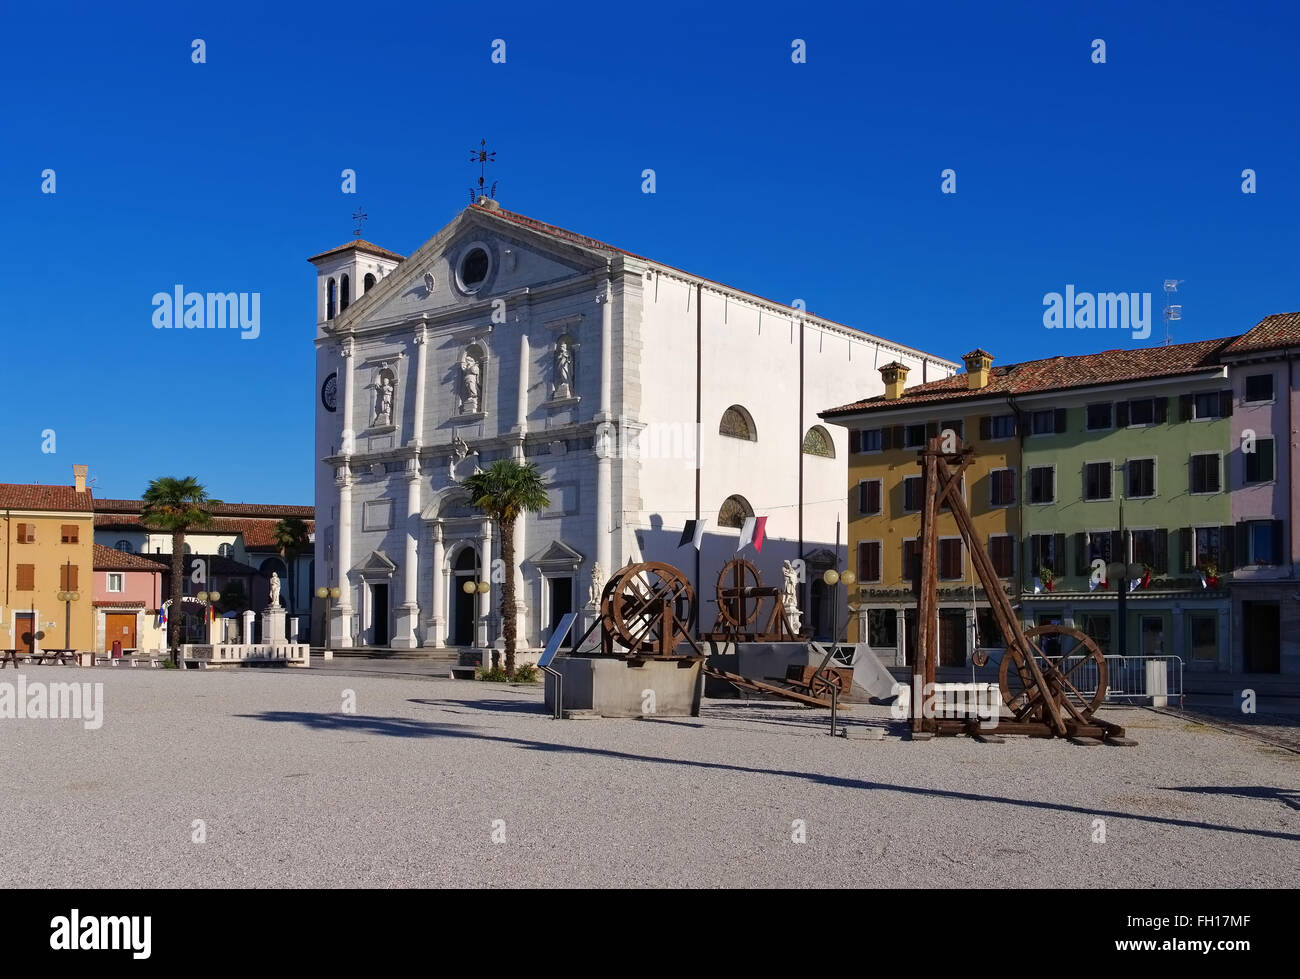 Palmanova in Italien - Palmanova in Italia, Piazza principale Foto Stock